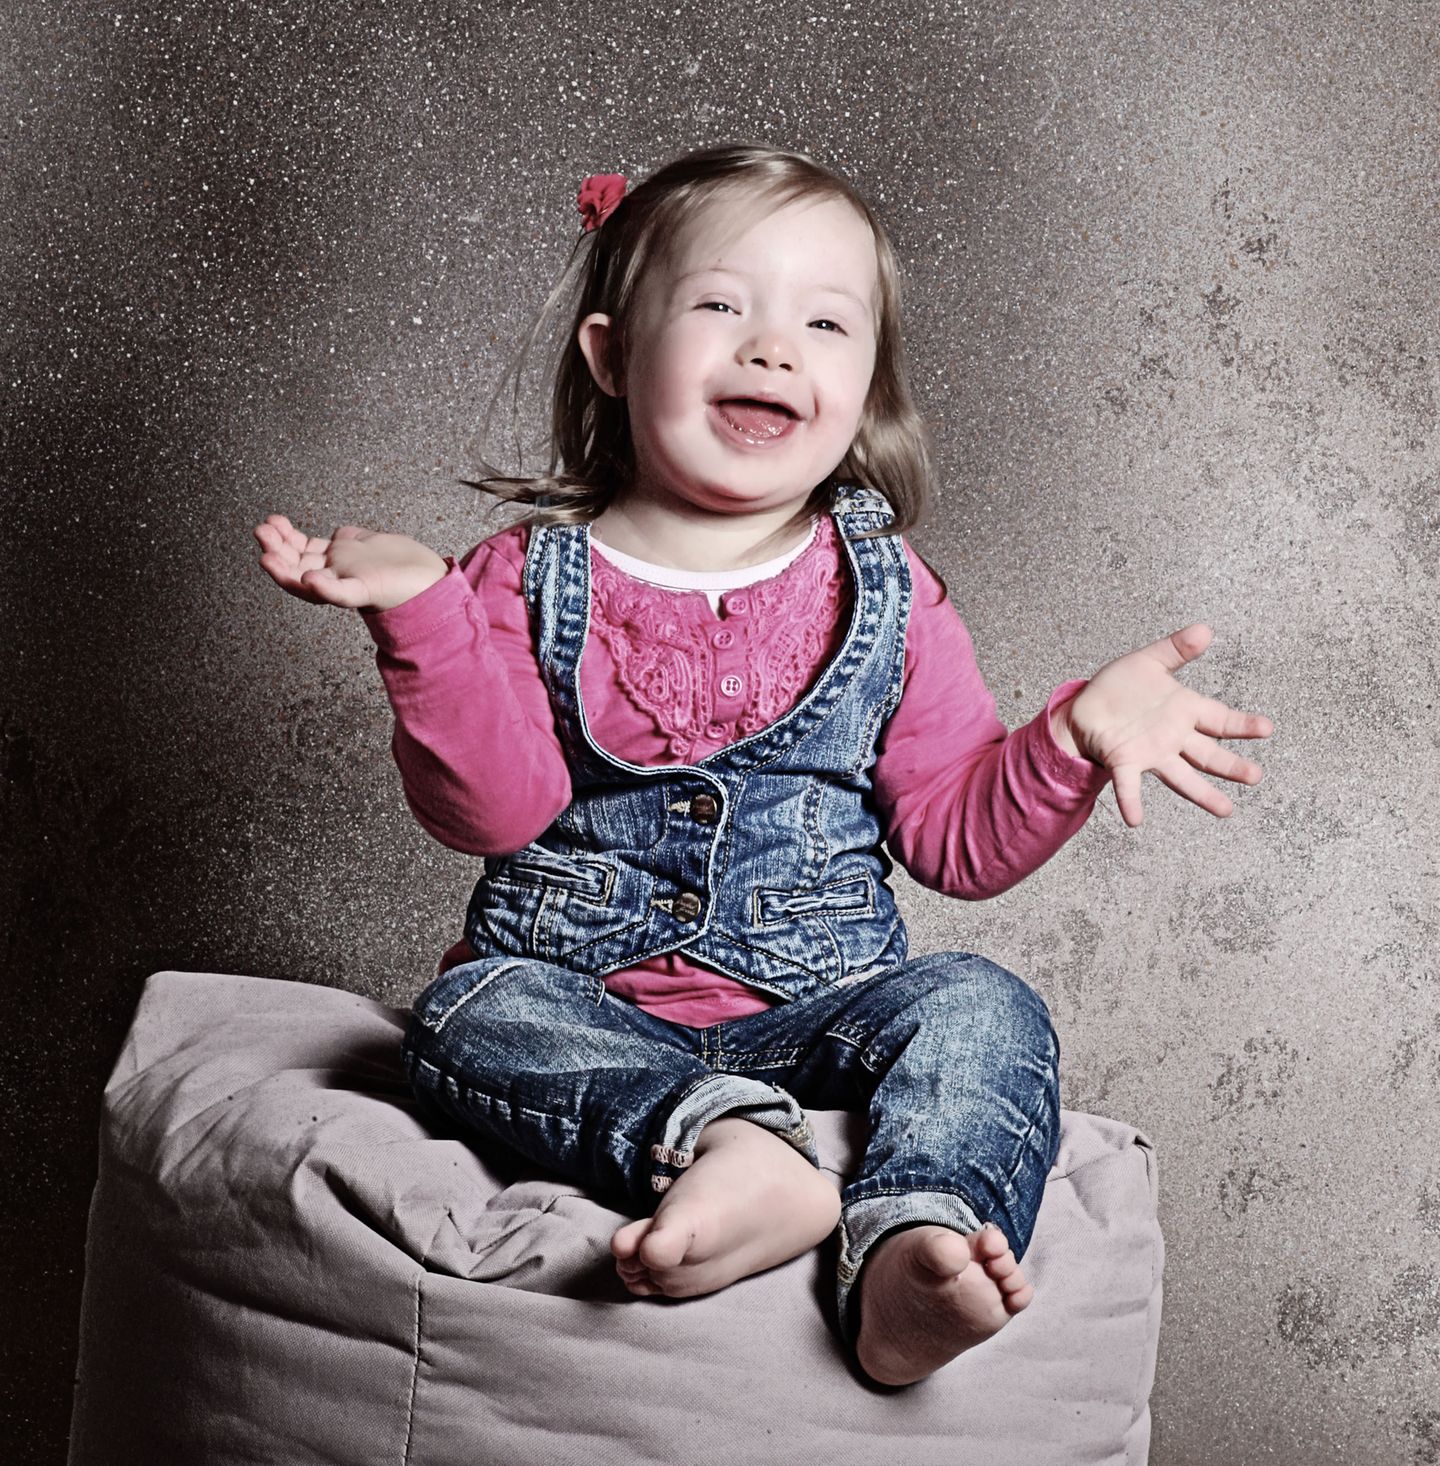 Menschen mit Down-Syndrom: Glück kennt keine Behinderung